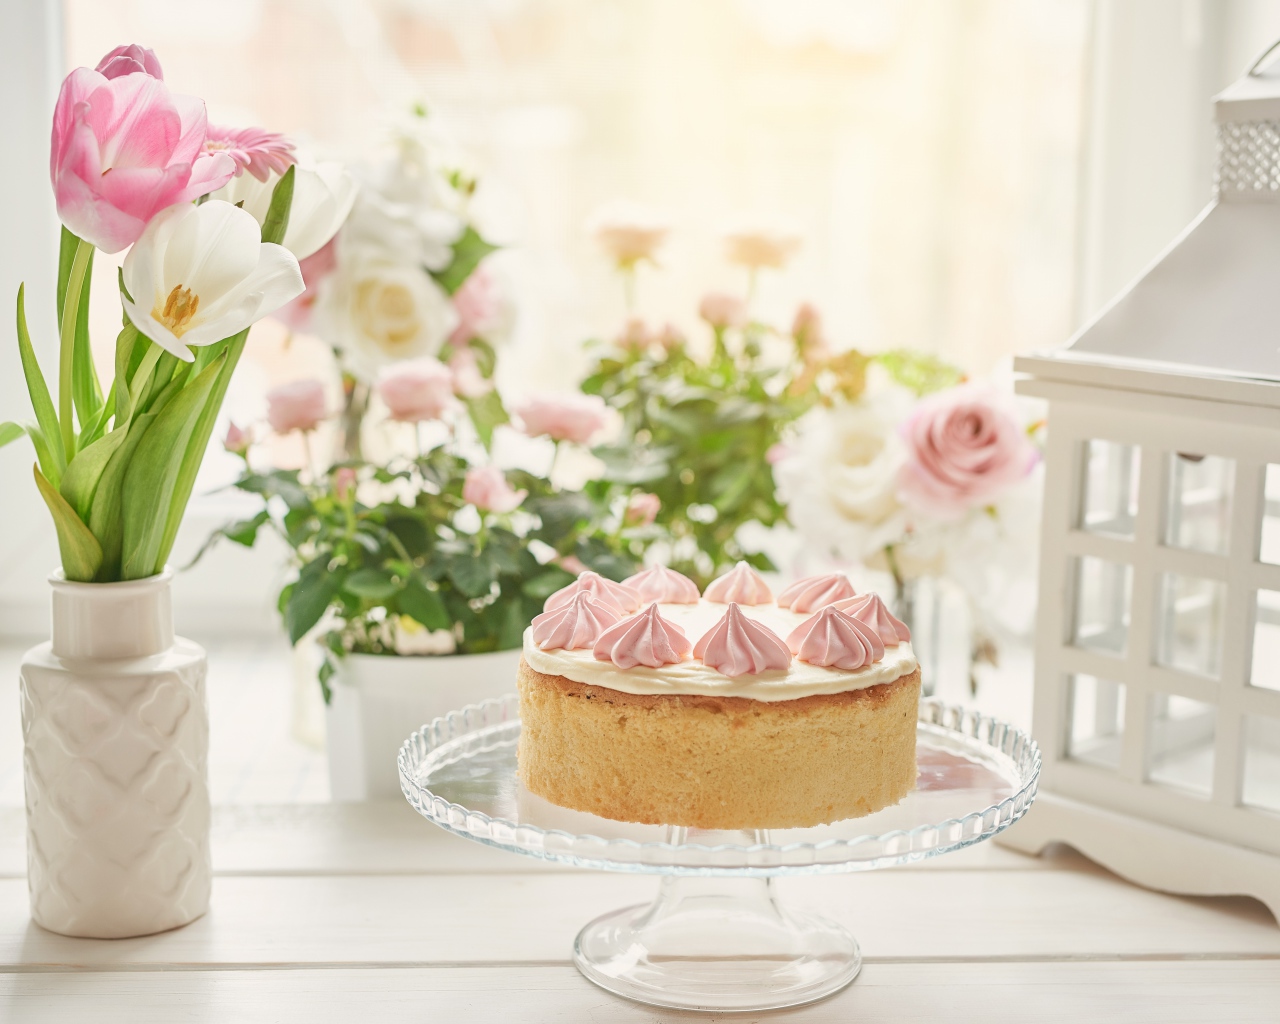 Вкусный пирог на столе с букетом тюльпанов 